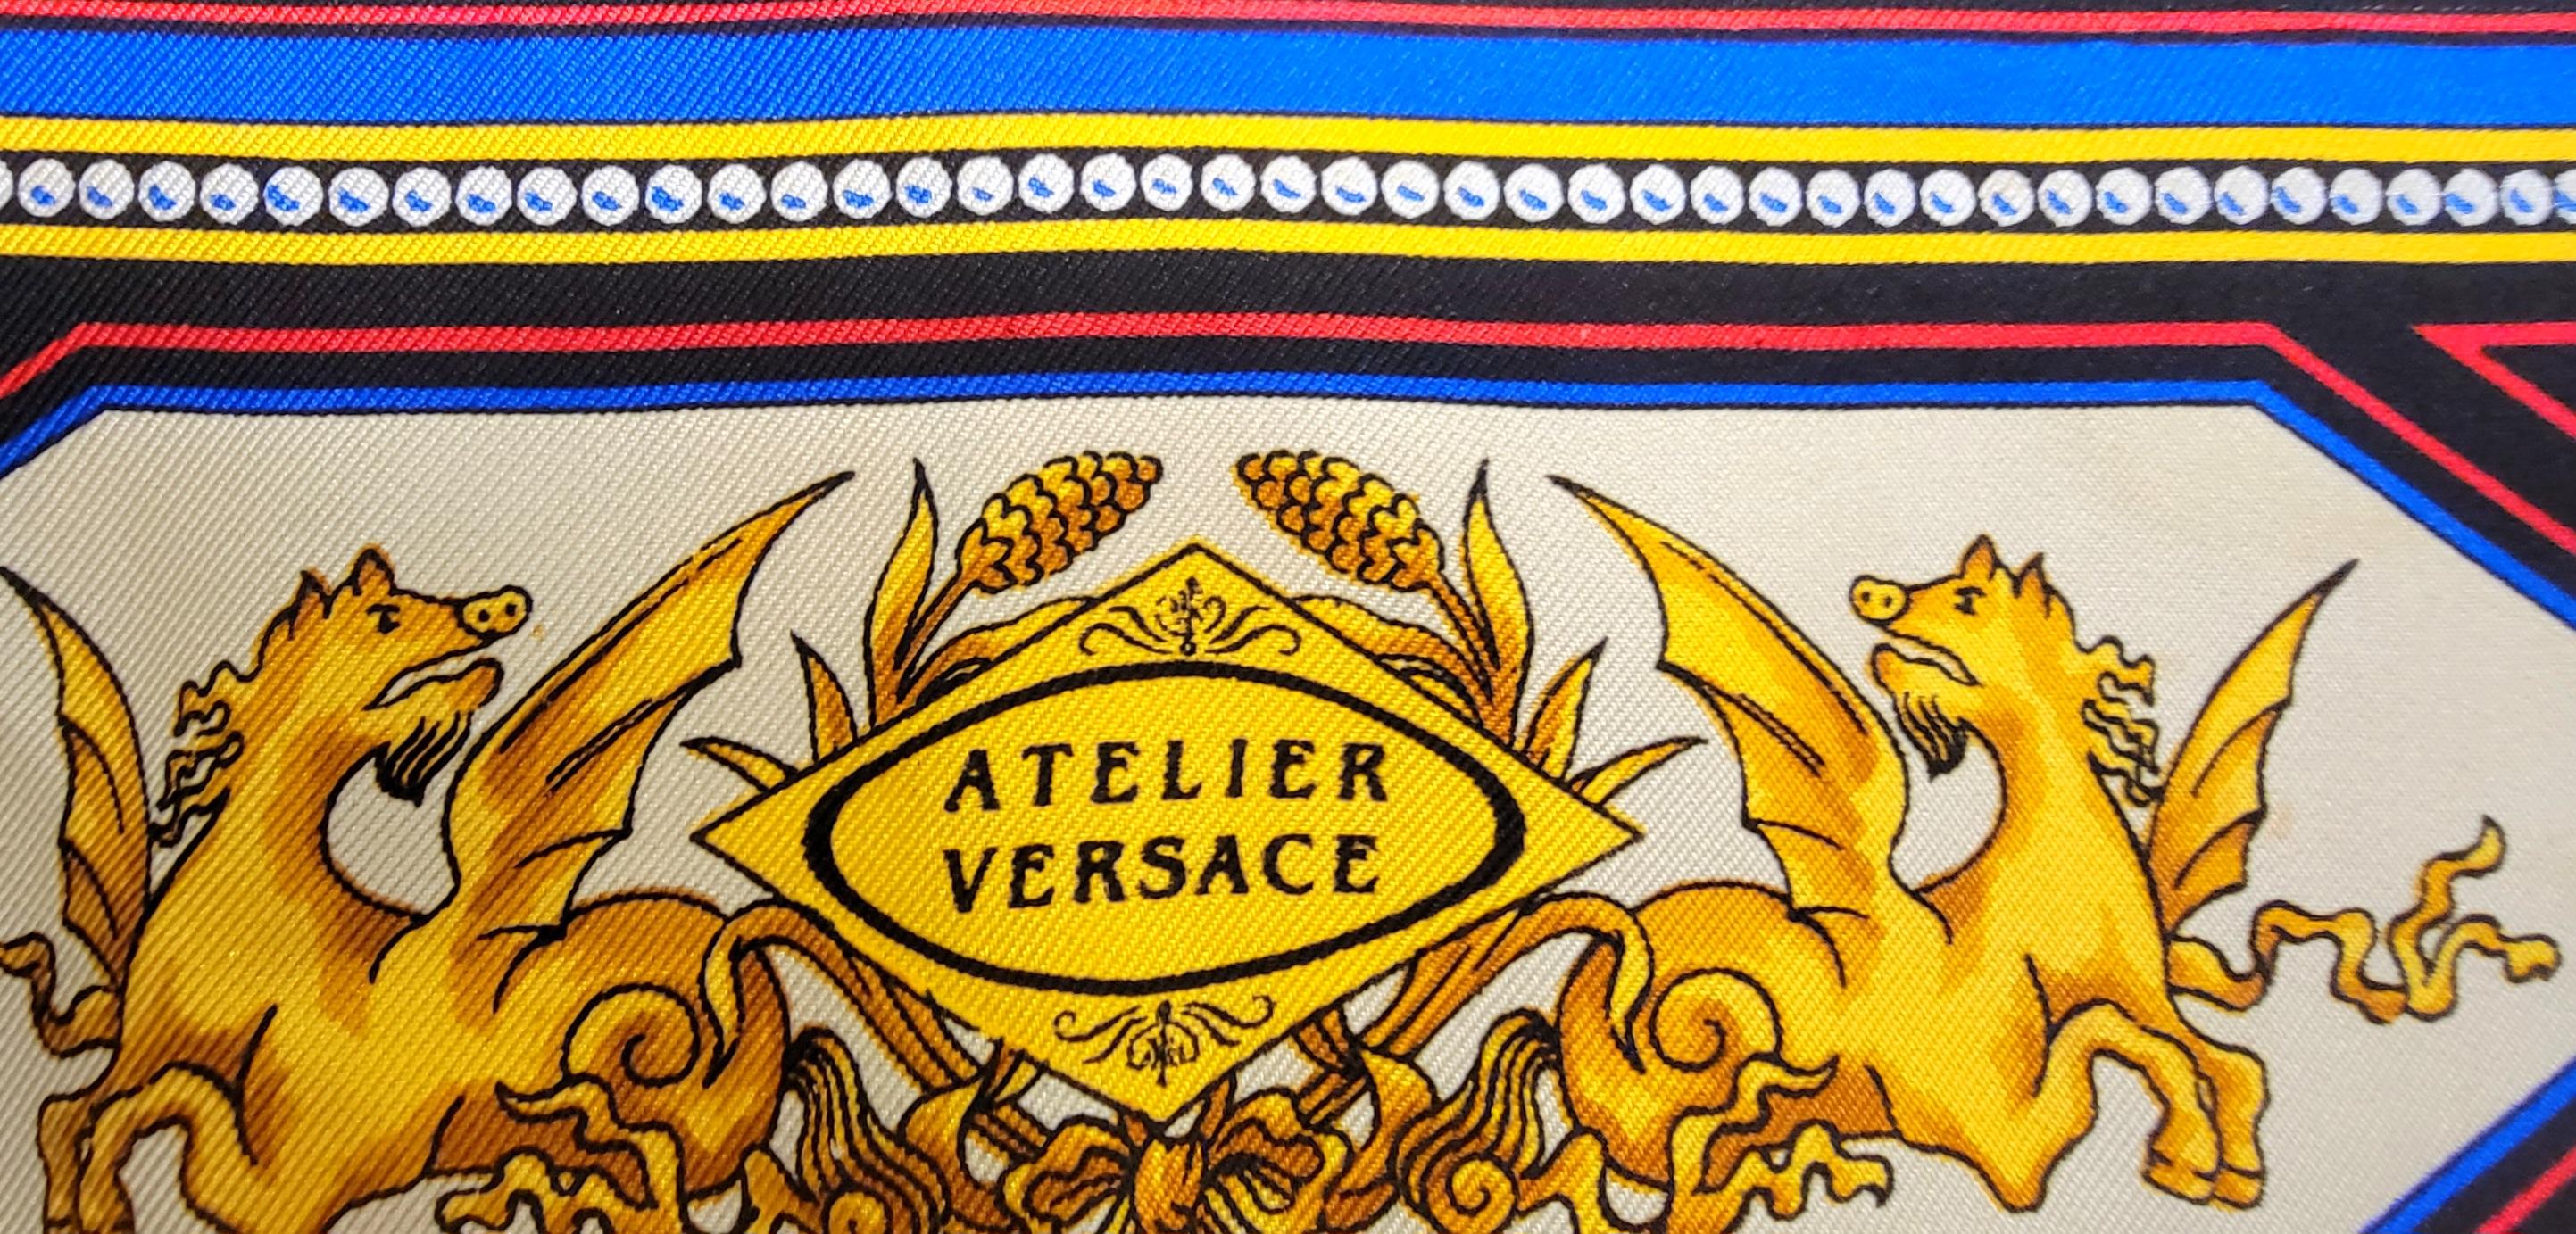  Gianni Versace Atelier - Écharpe en soie Mythology Amore Psiche Cupidon - Début des années 1990 - 26 pouces Pour femmes 